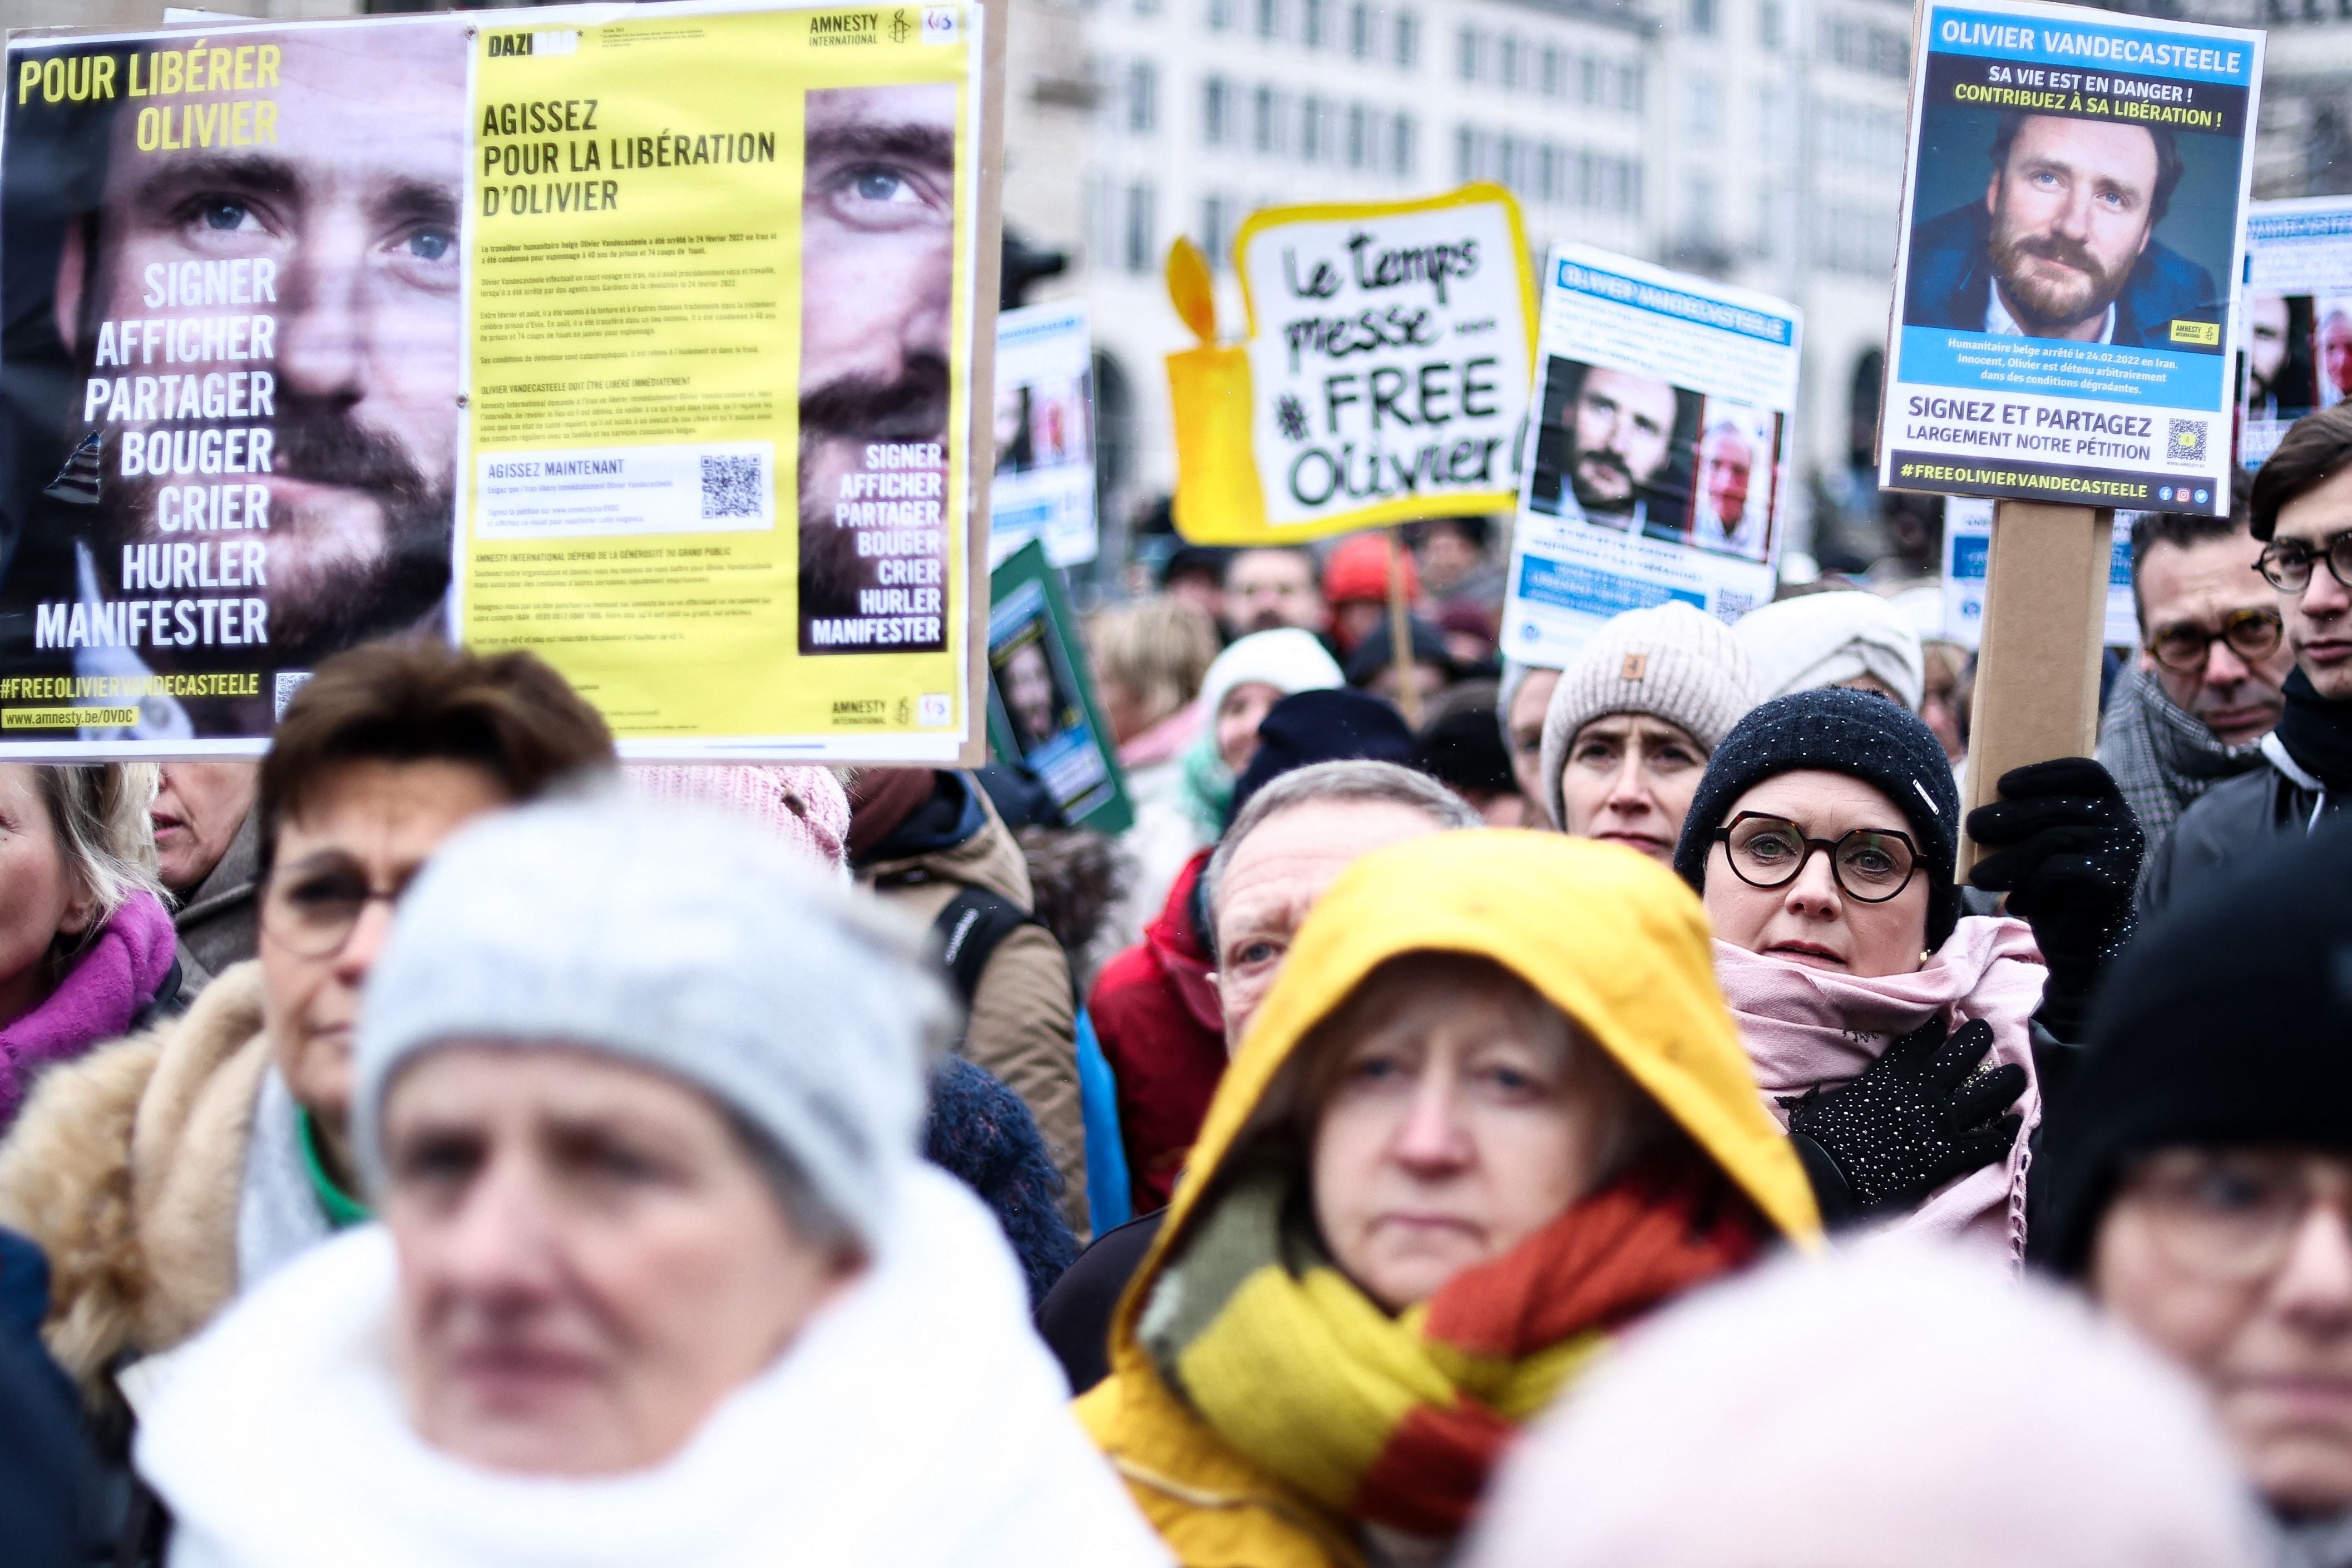 Las manifestaciones en solidaridad con los iraníes aún se realizan en diversas latitudes. Este domingo, en Bruselas, hubo una caminata en la que los belgas solicitaron la liberación de su compatriota Olivier Vandecasteele, un funcionario humanitario que fue condenado a 40 años de prisión en Irán.